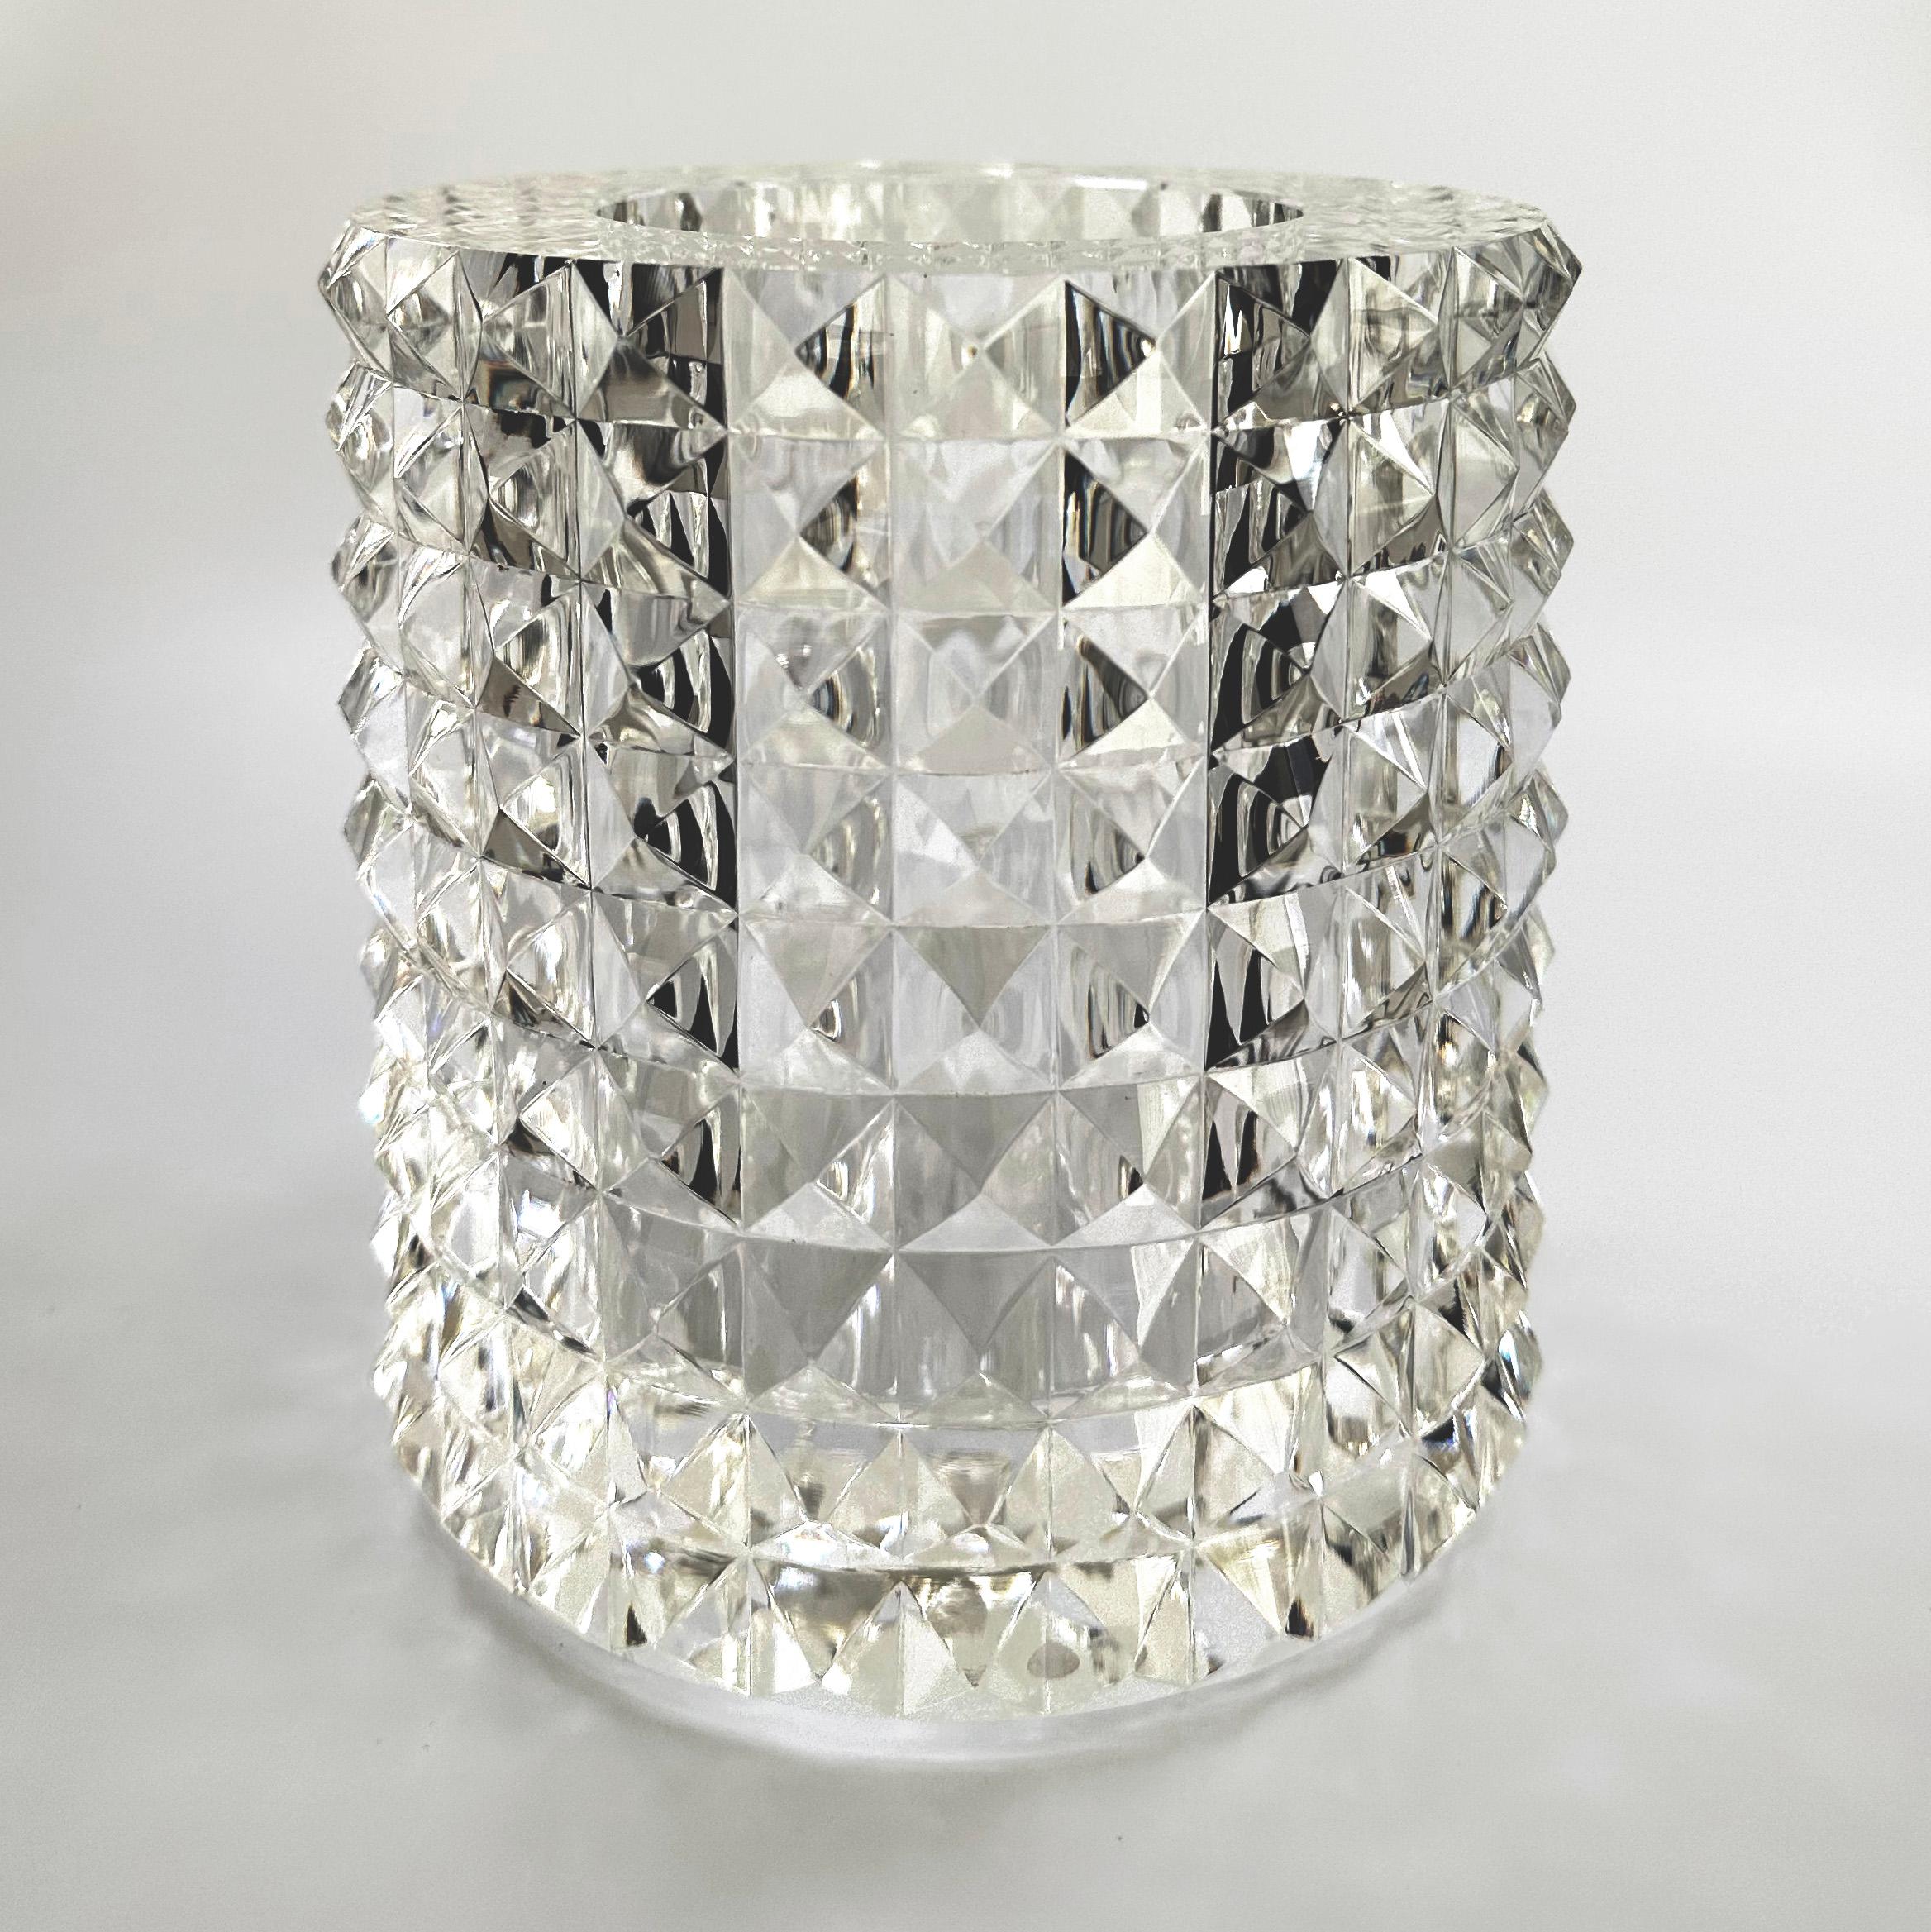 Diese bezaubernde runde Vase mit Pyramidengesicht von Veritas Home ist ein exquisites Zeugnis für modernen Luxus. Dieses 2014 gefertigte Meisterwerk aus Glas überschreitet die Grenzen des traditionellen Designs. Veritas Home, das Synonym für